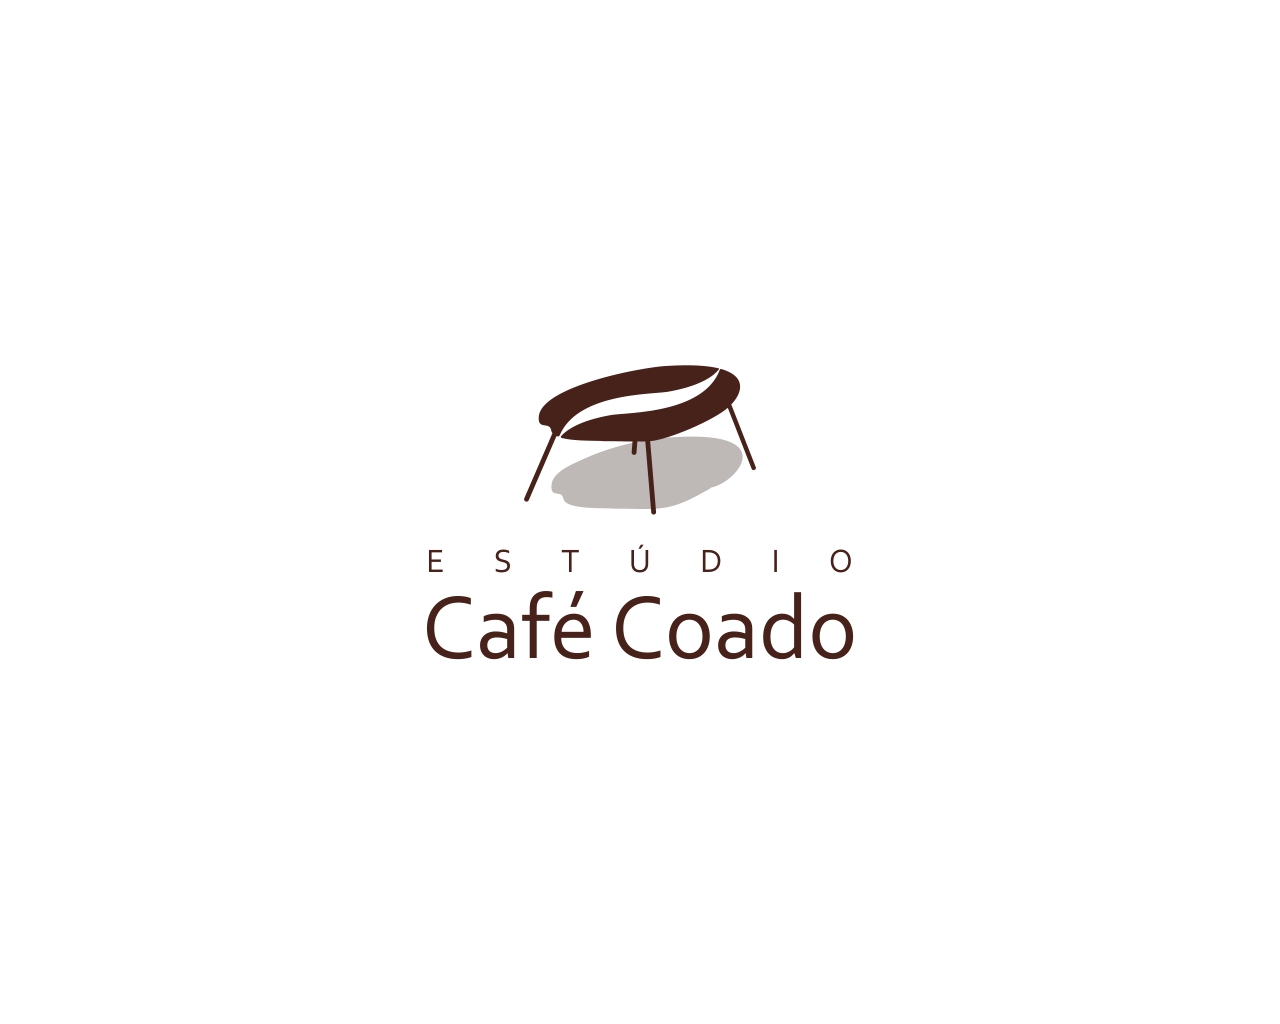 Logo Design entry 1943410 submitted by akari to the Logo Design for Estúdio Café Coado run by Camila